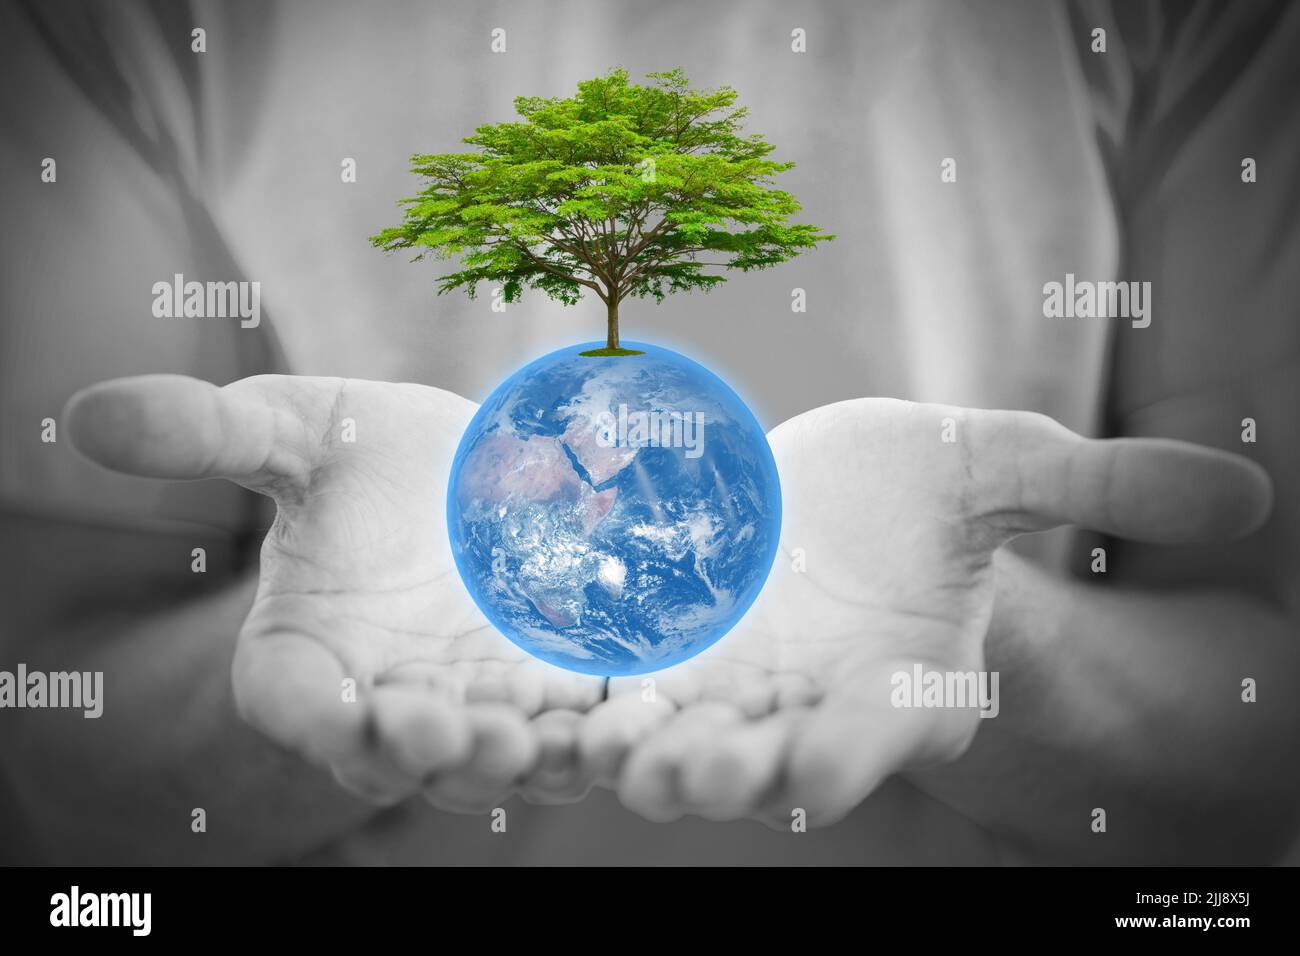 Menschen Hand mit blauer Erde und grünen Baum für zusammen helfen, die Umwelt für das Leben zu retten.Elemente dieses Bildes von der NASA eingerichtet. Stockfoto